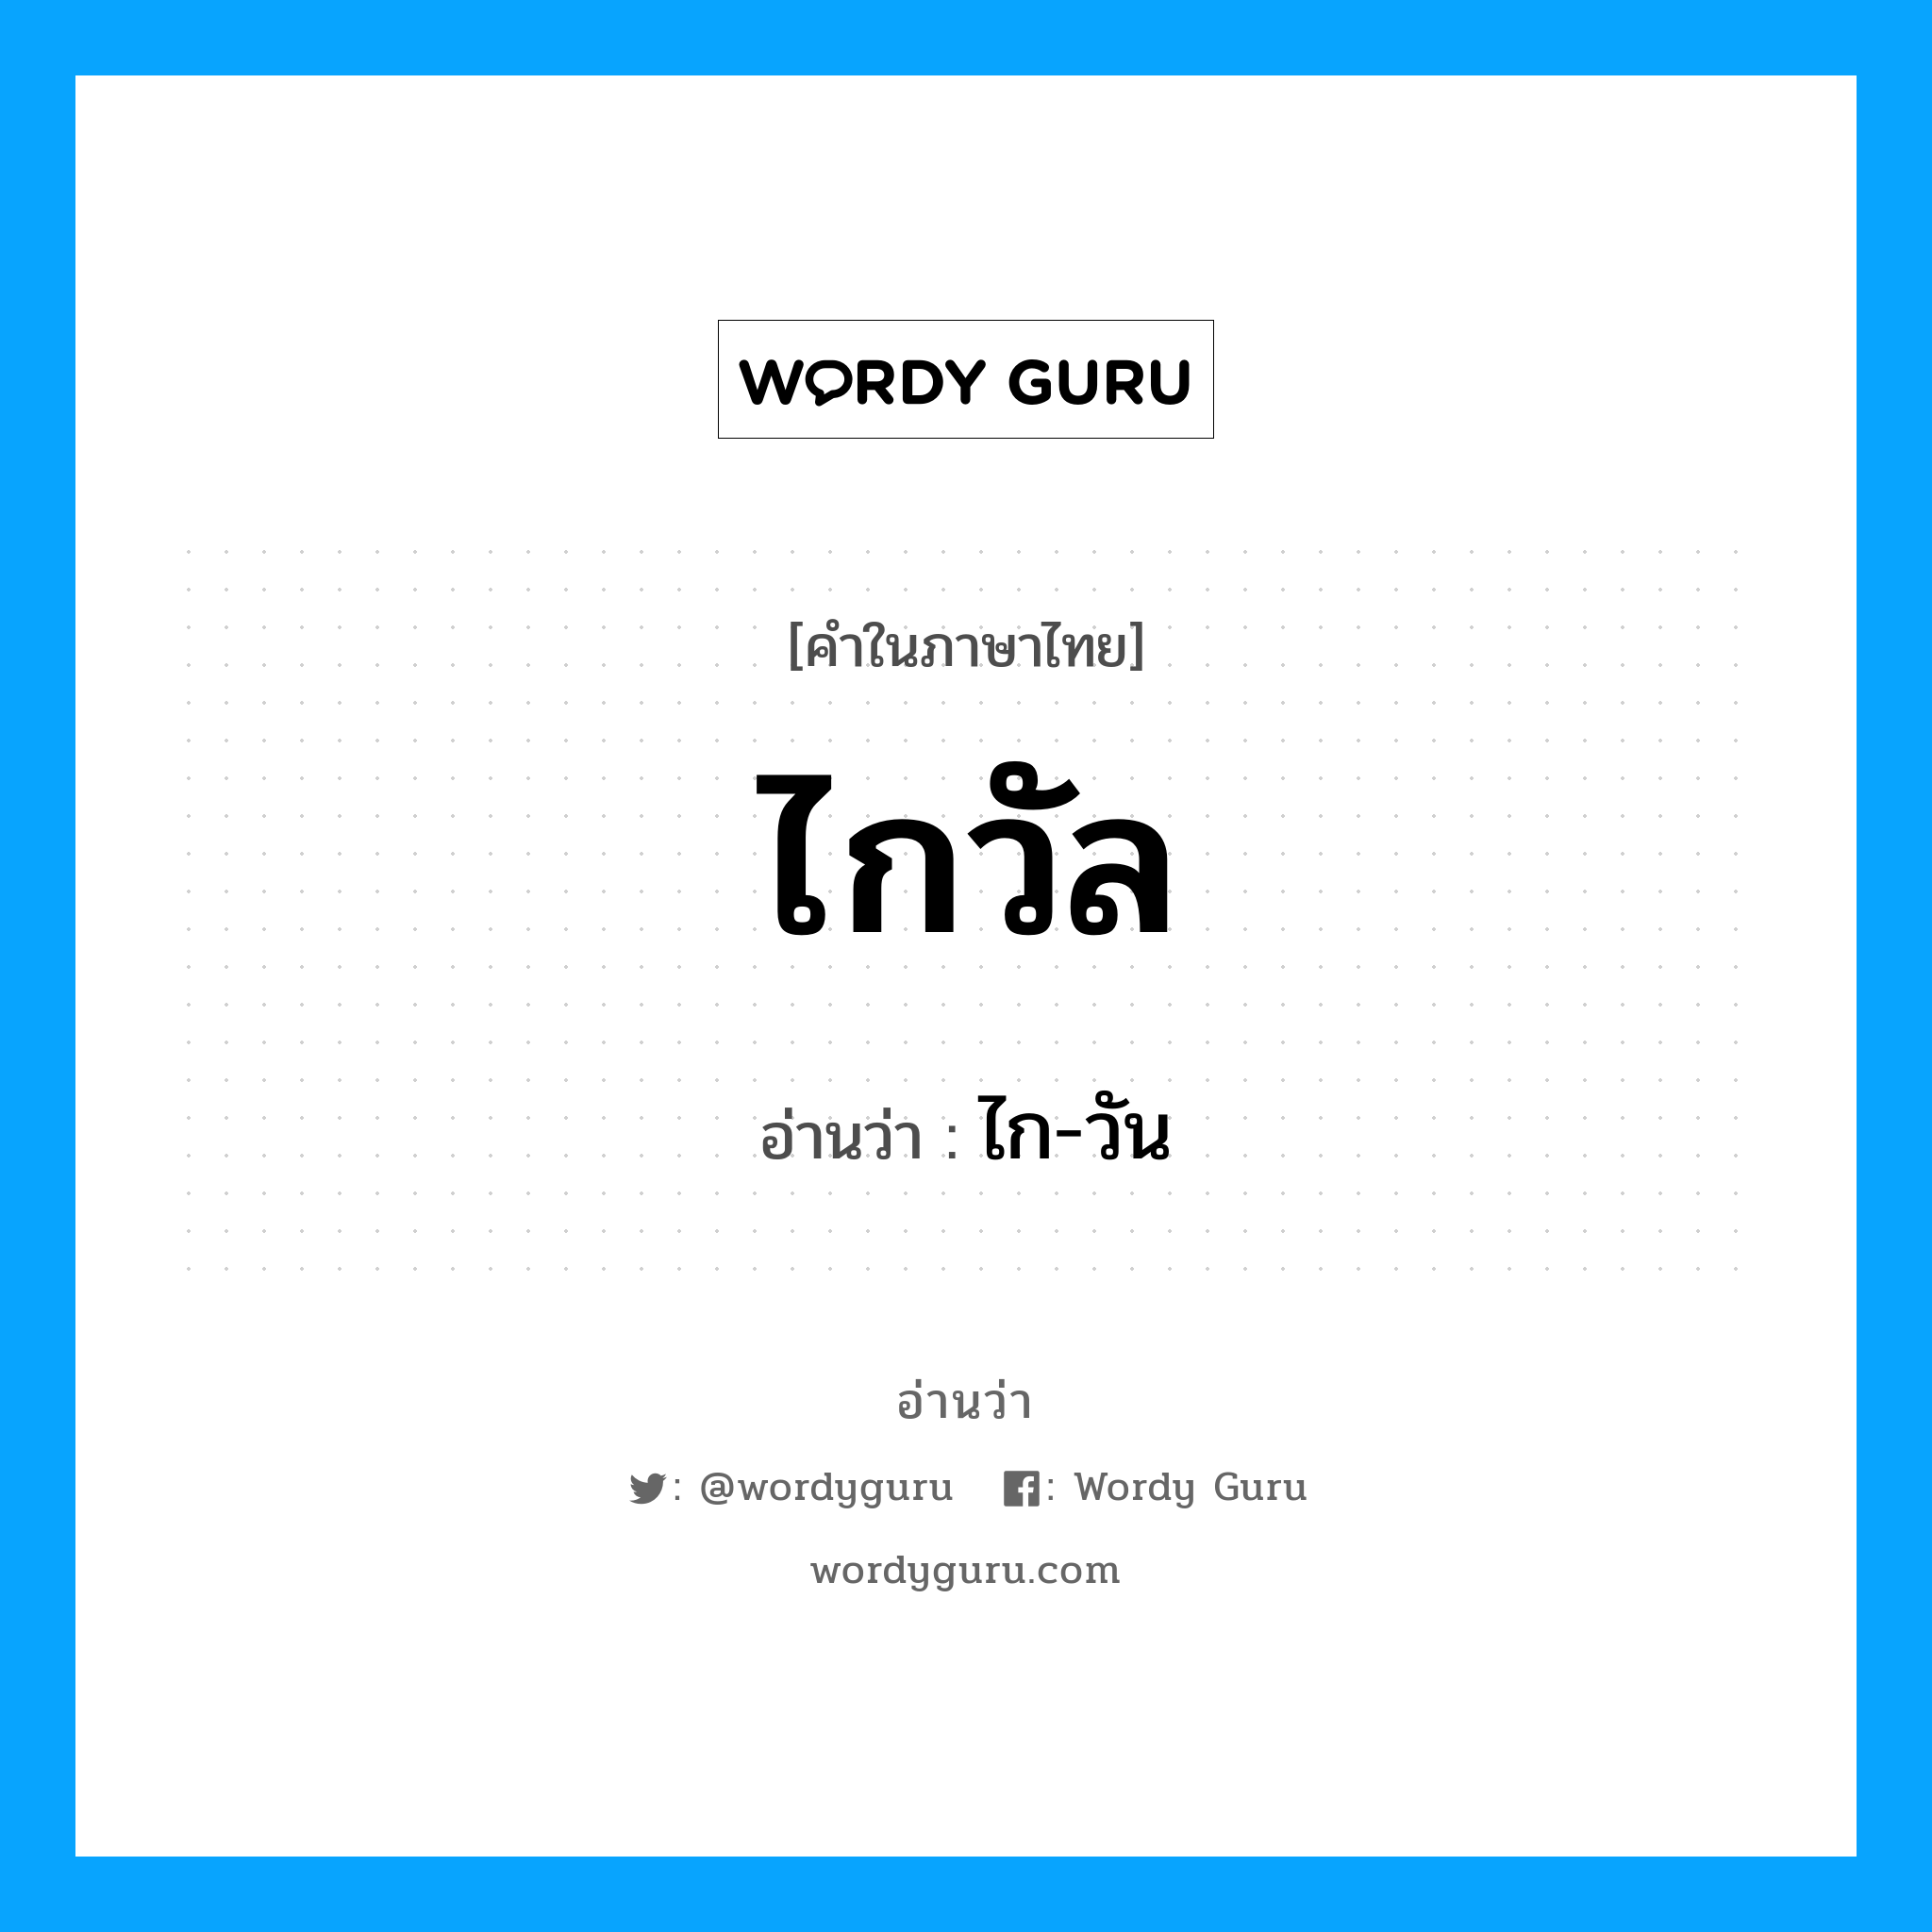 ไก-วัน เป็นคำอ่านของคำไหน?, คำในภาษาไทย ไก-วัน อ่านว่า ไกวัล